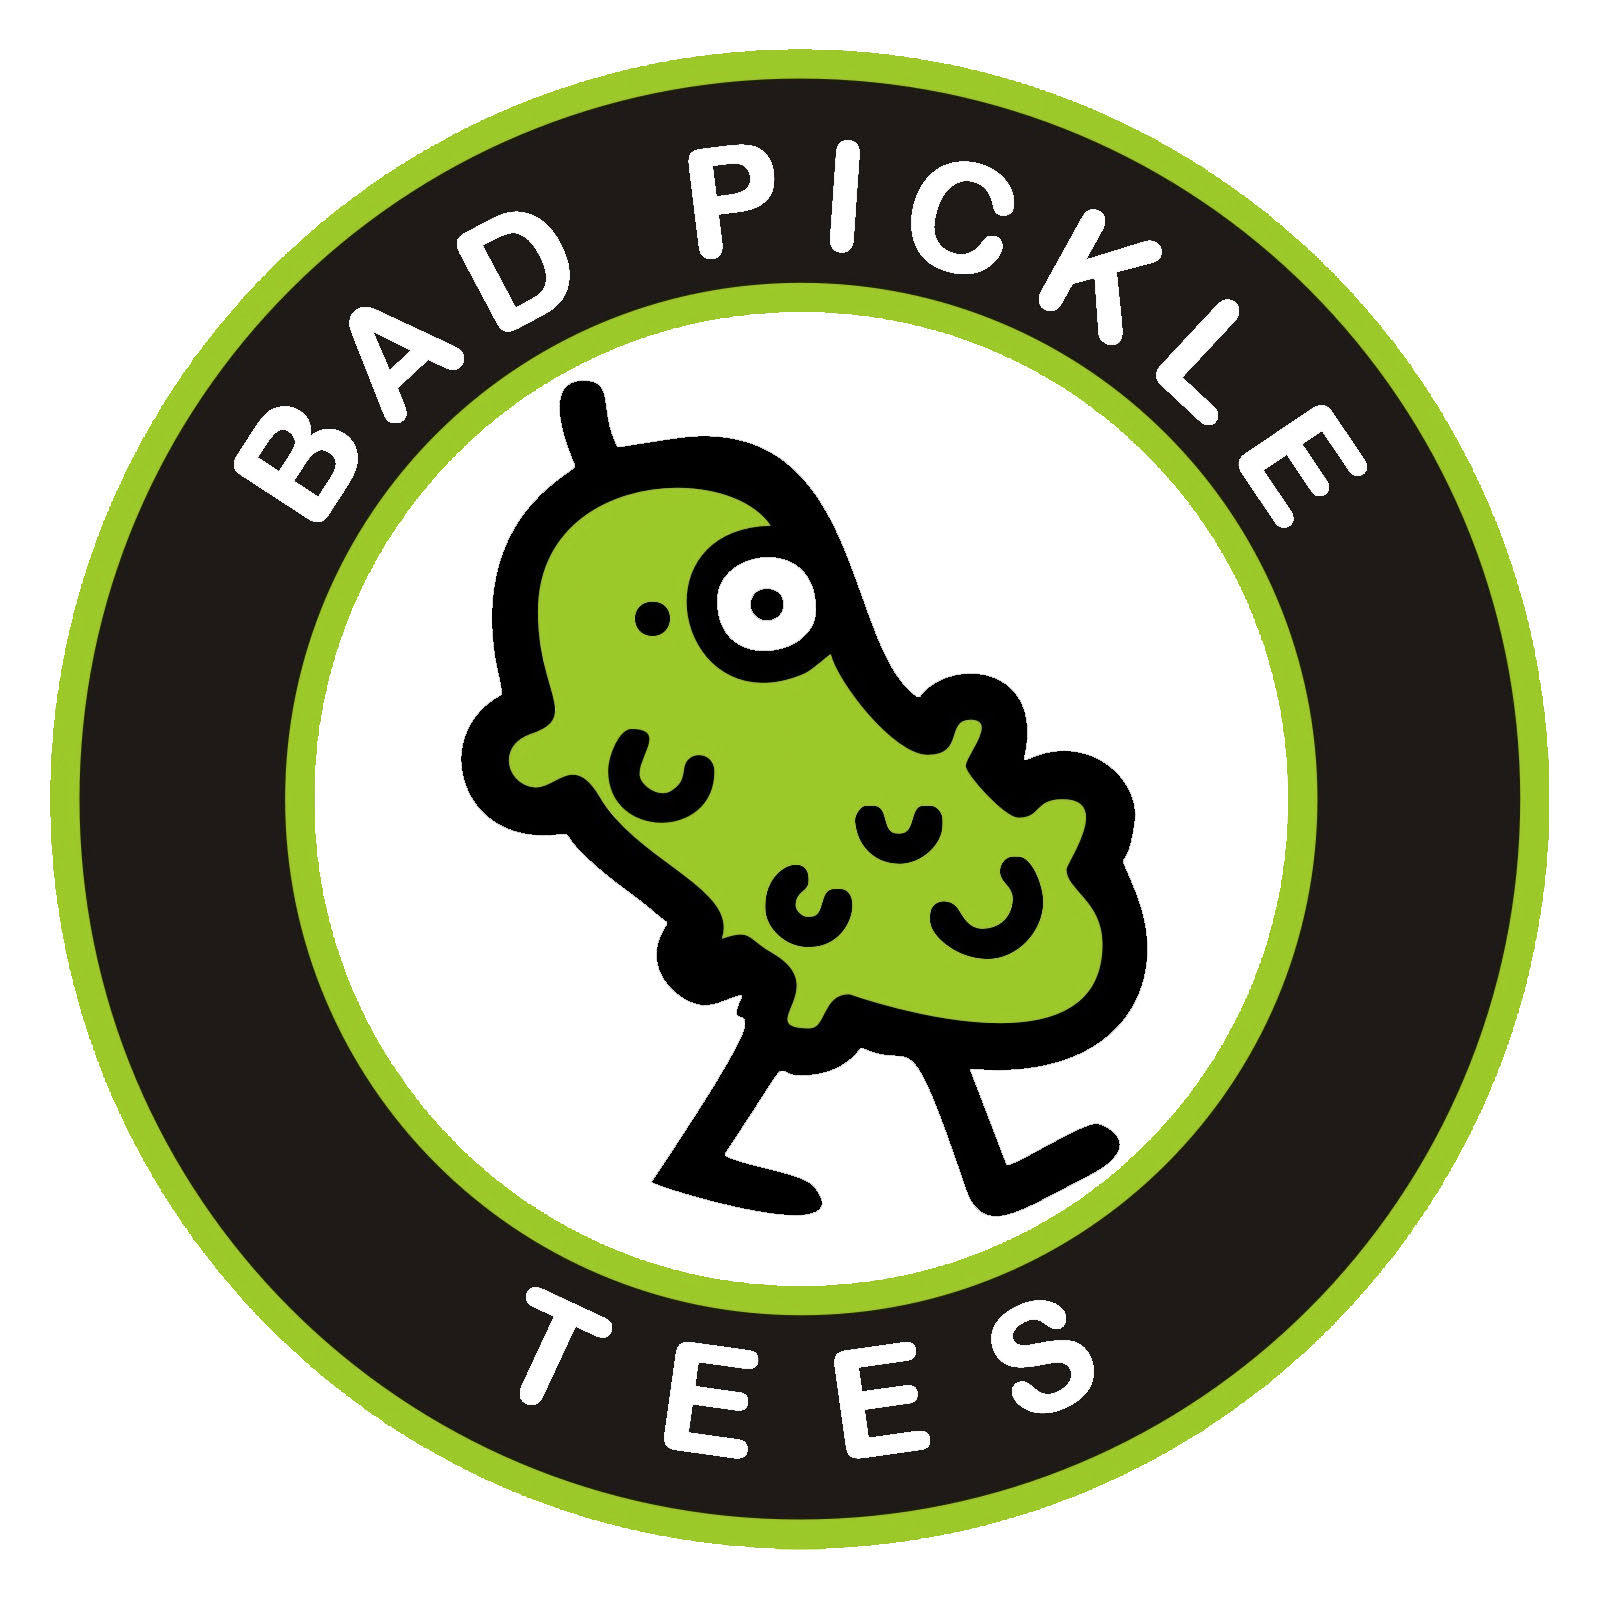 Bad Pickle Tees